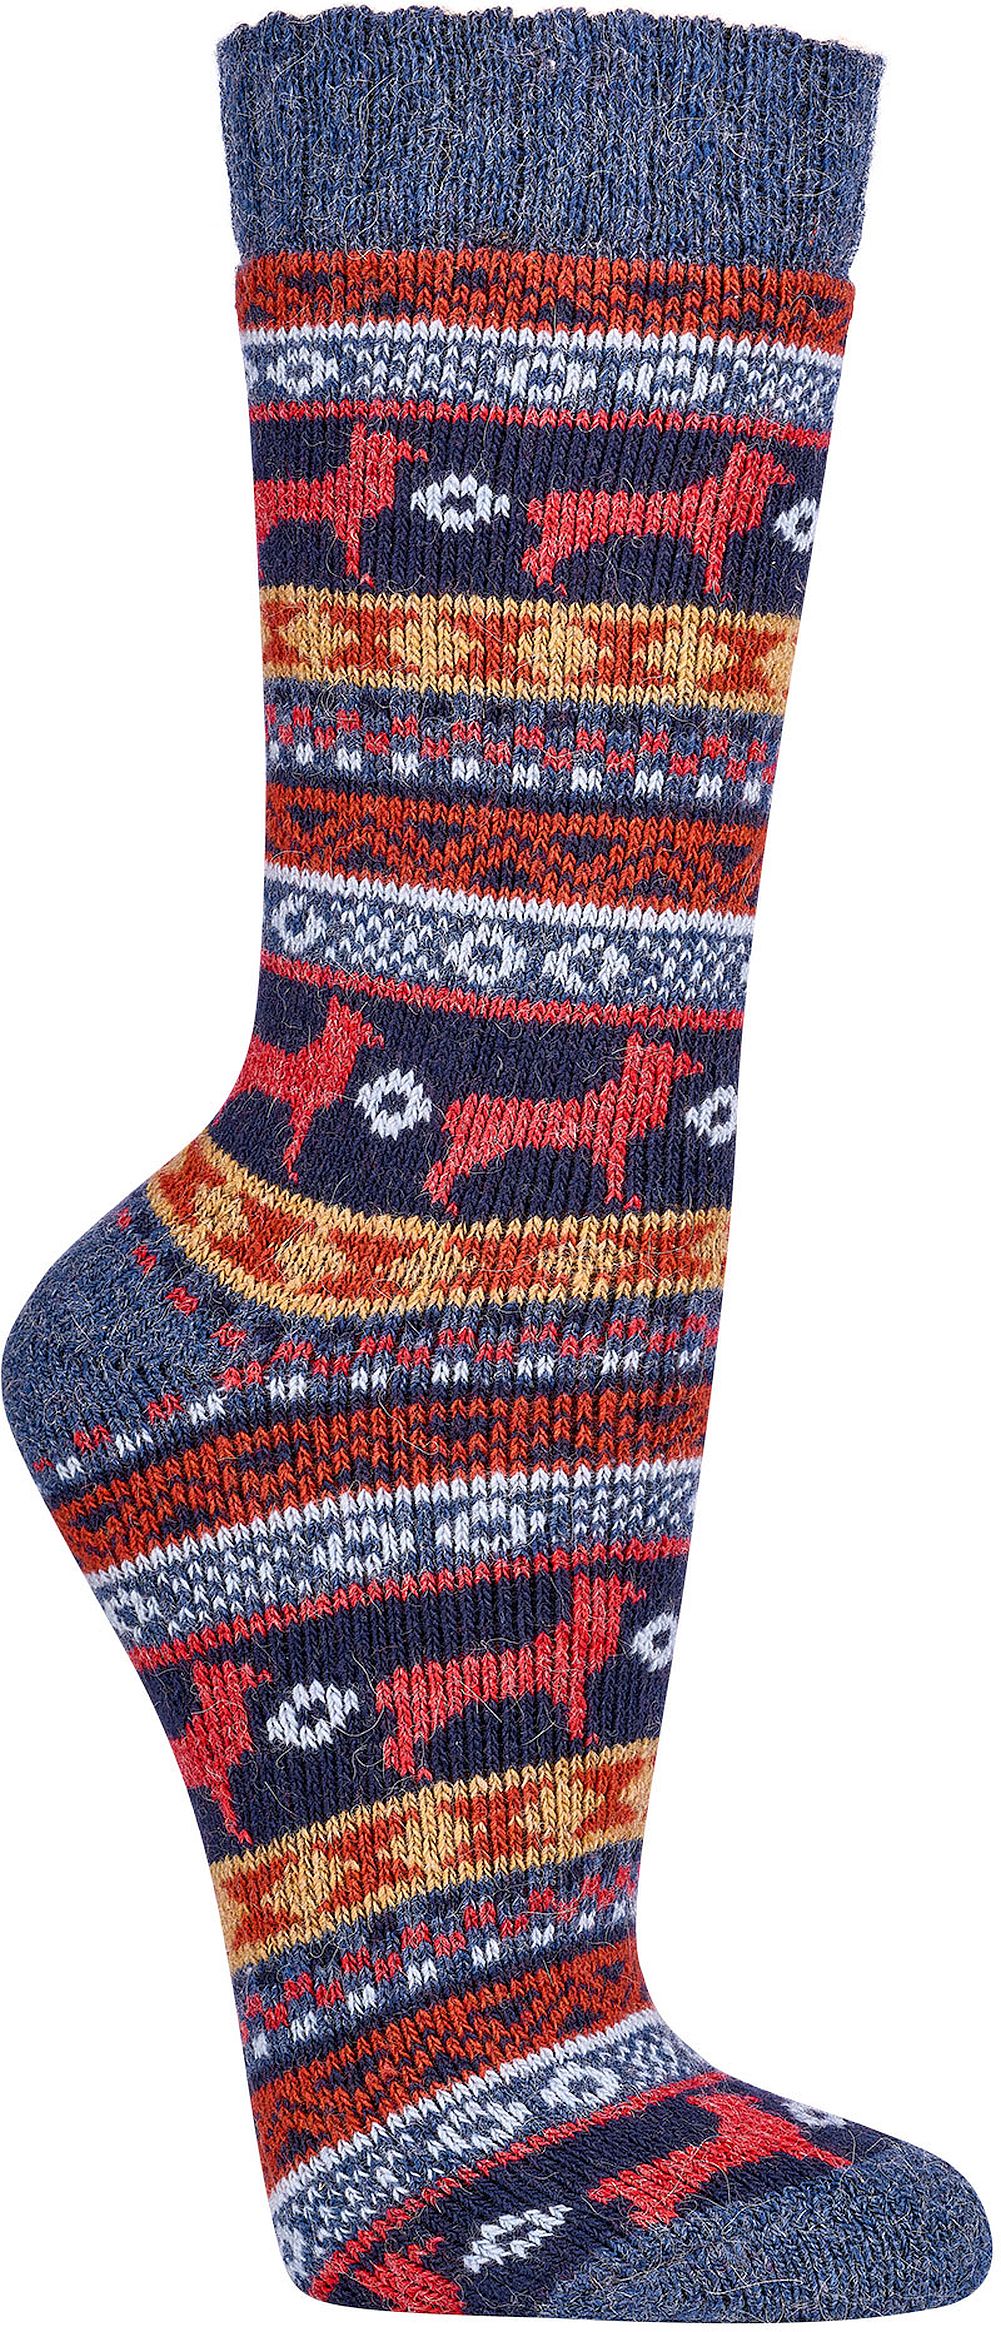 DAMEN & HERREN „Peru“-Hygge-Socken mit  Merino- und Alpakawolle 2 Paar